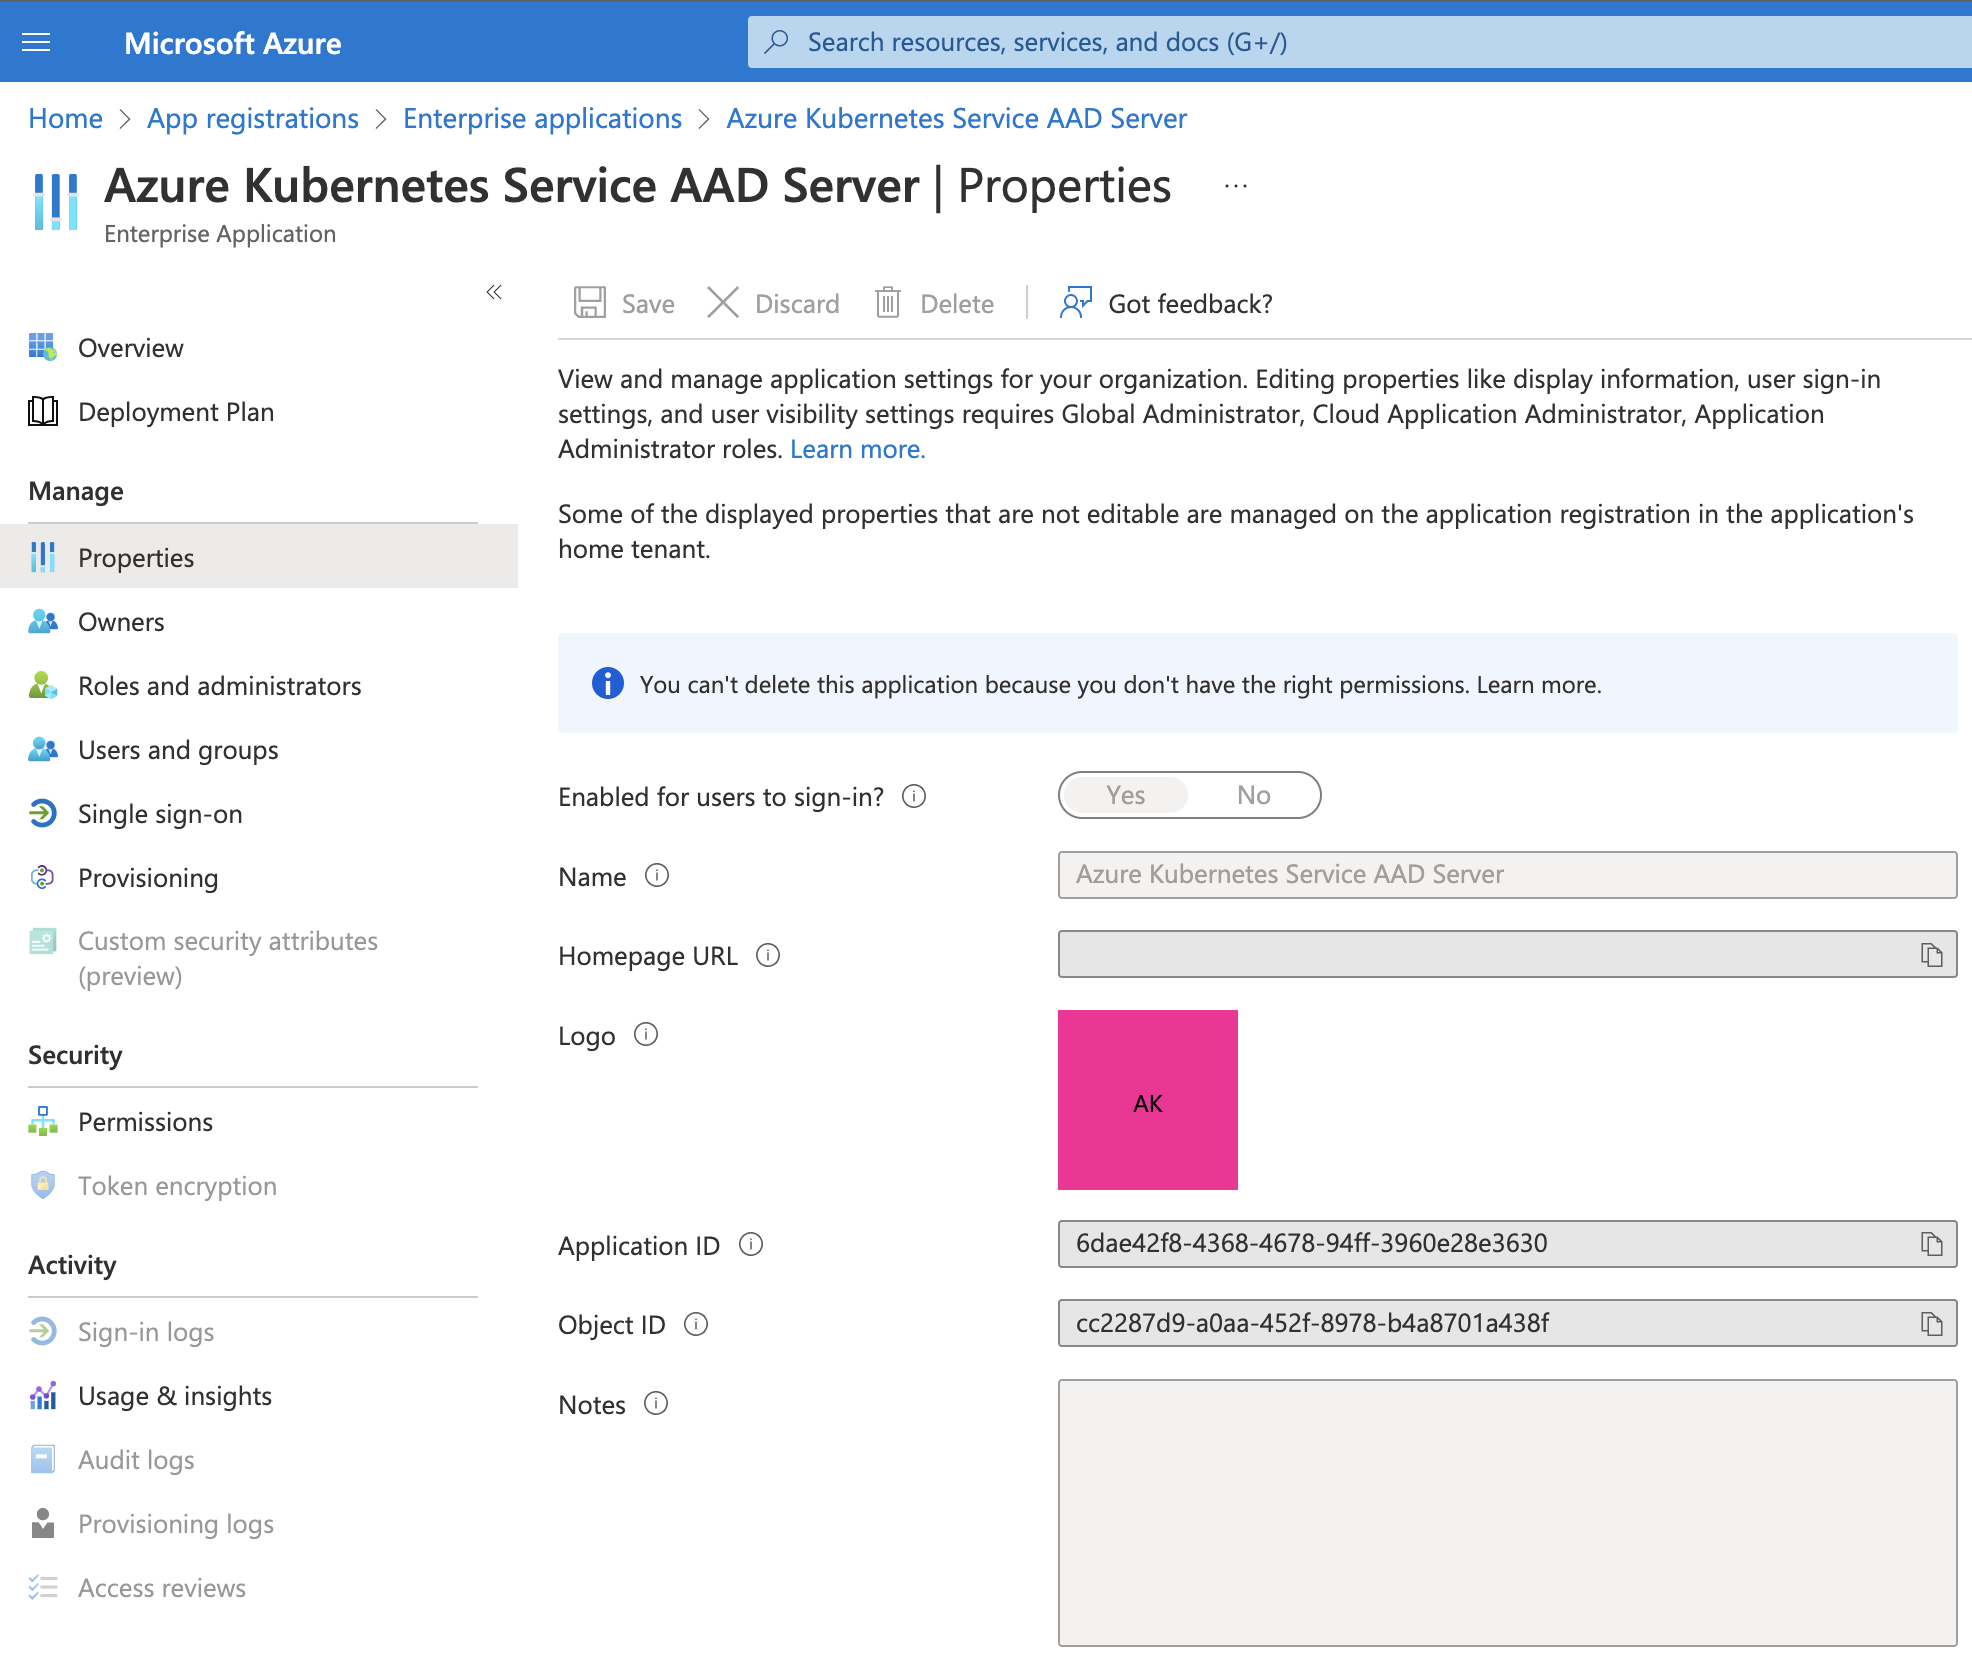 Azure Kubernetes Service AAD Server